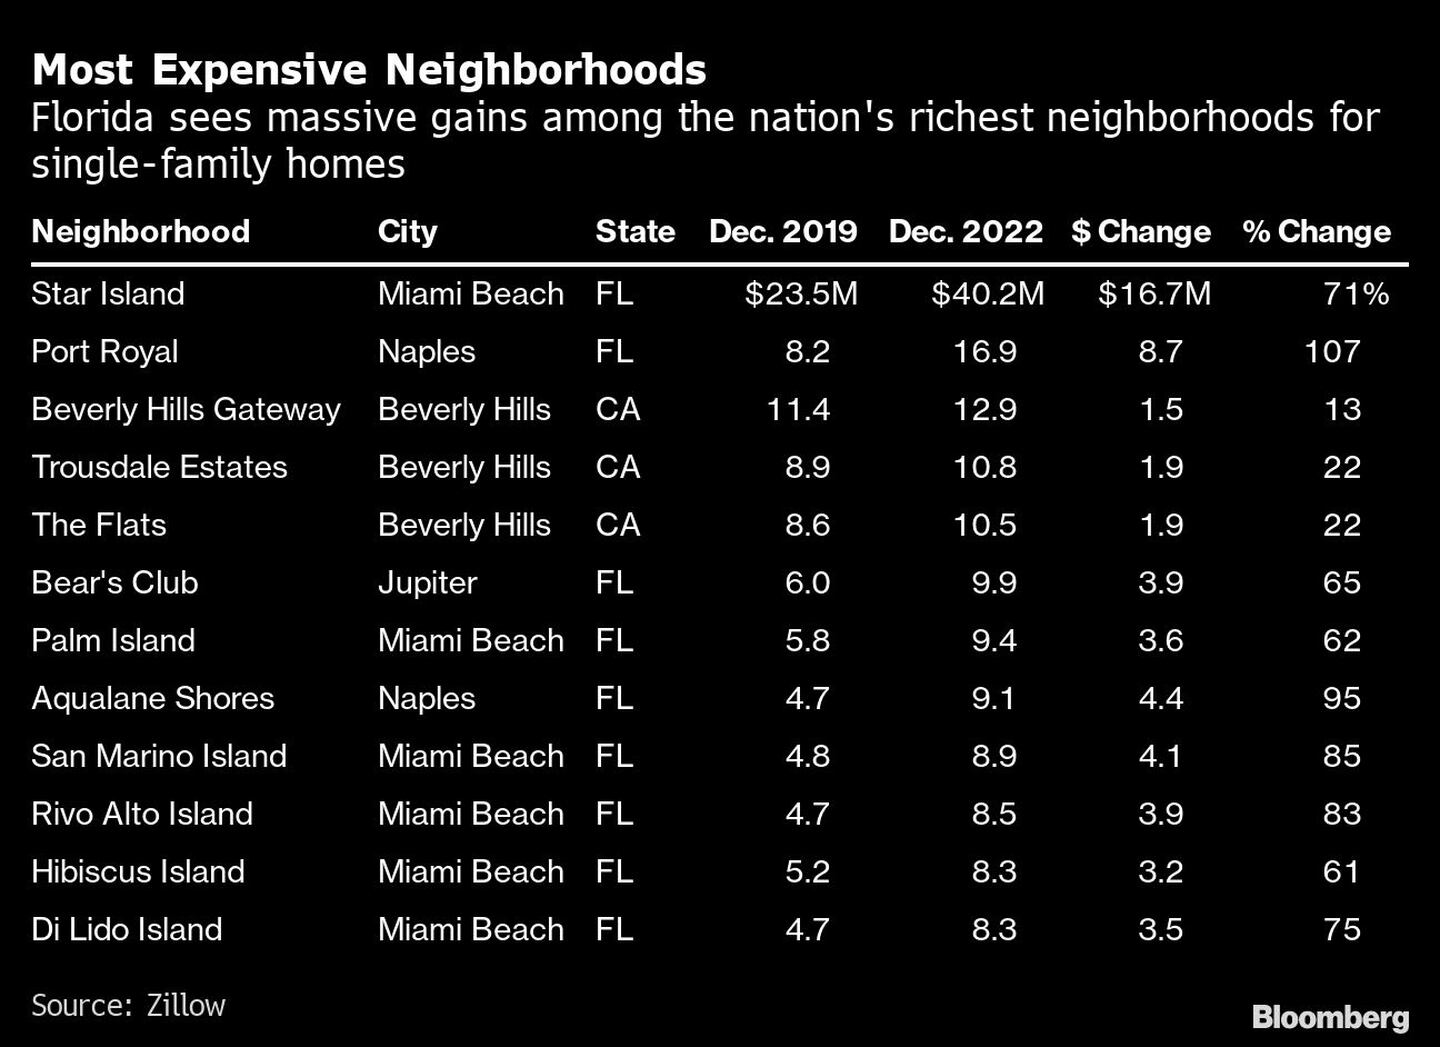 Florida registra enormes ganancias entre los barrios más ricos del país en viviendas unifamiliaresdfd